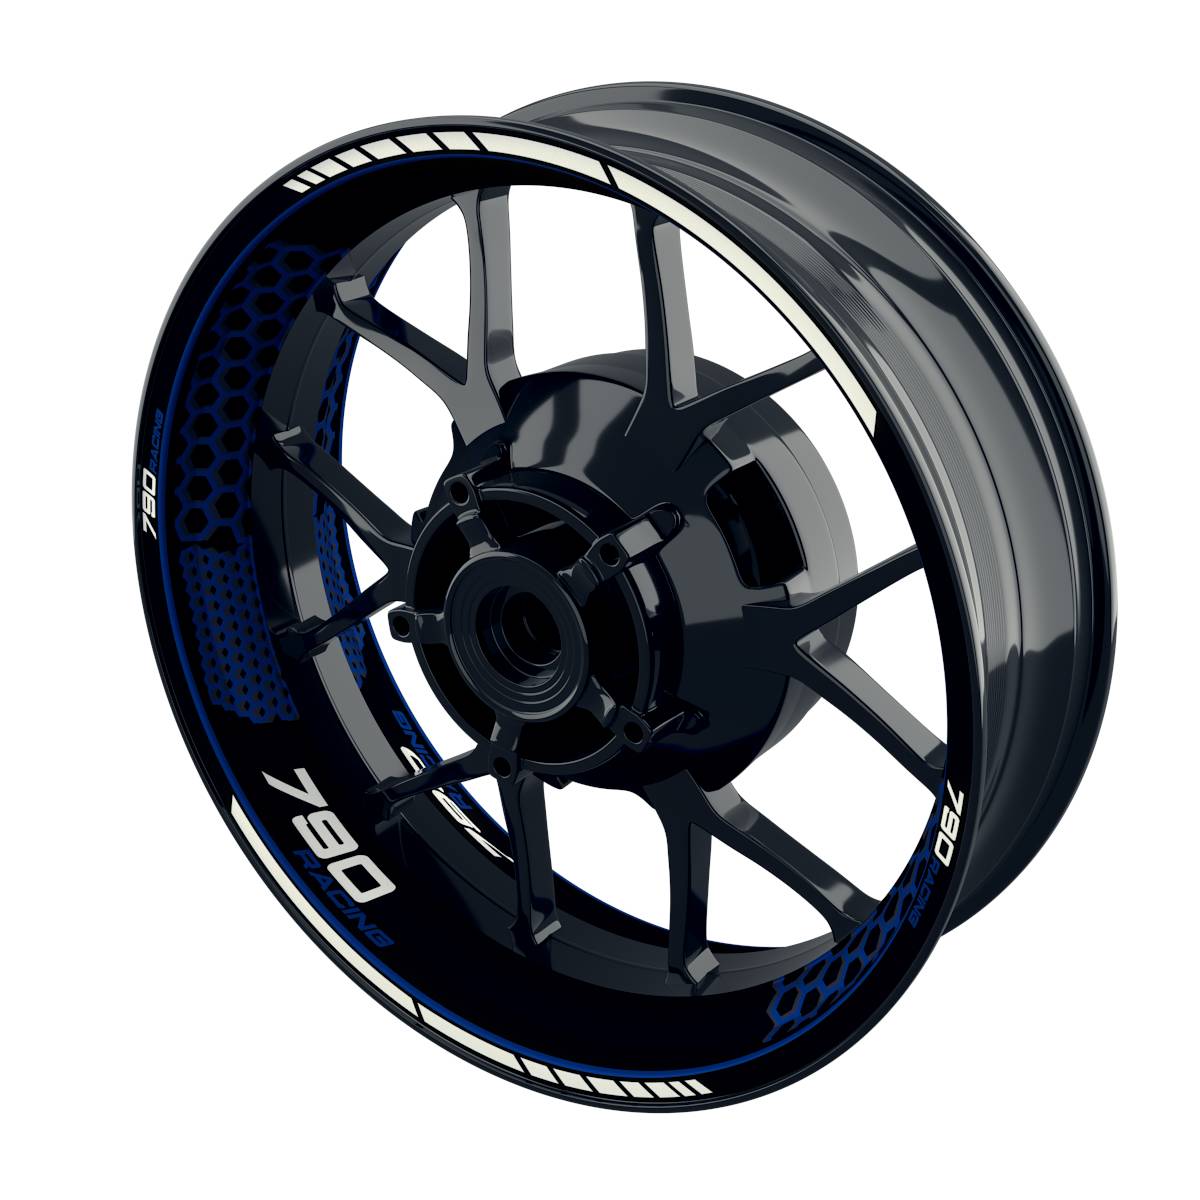 790 Racing Rim Decals Hexagon Wheelsticker Premium